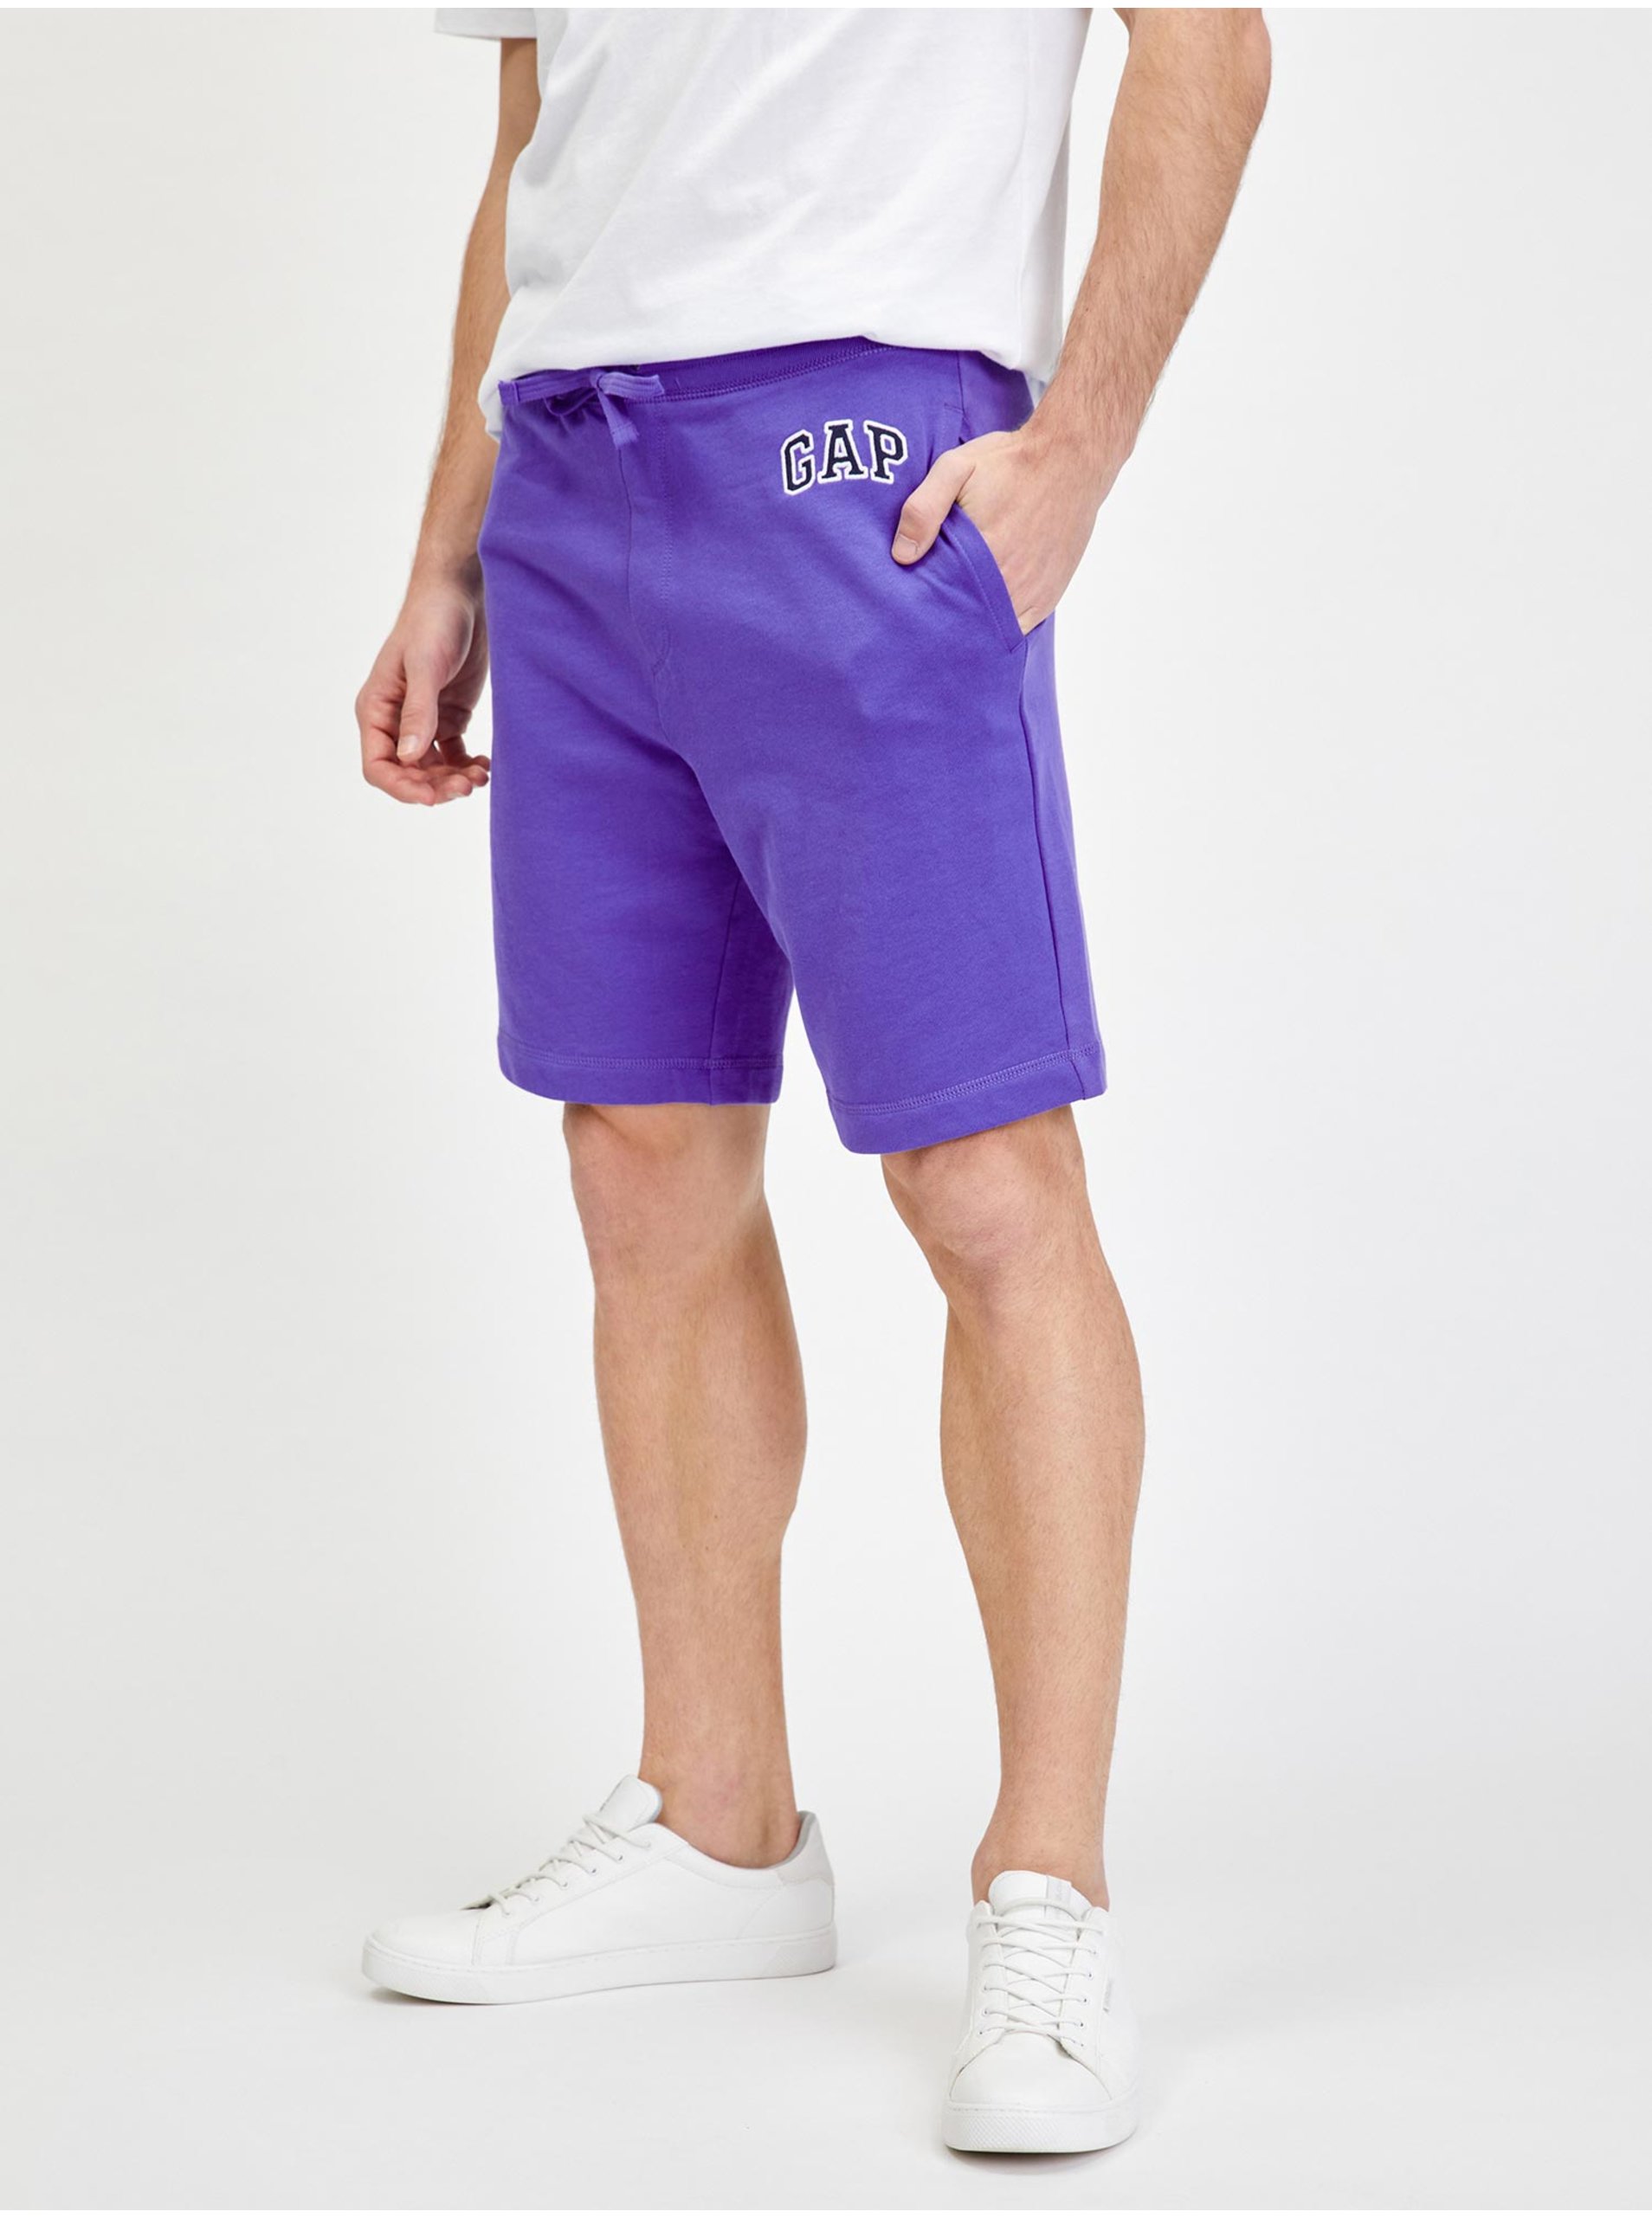 E-shop Fialové pánske teplákové šortky logo GAP